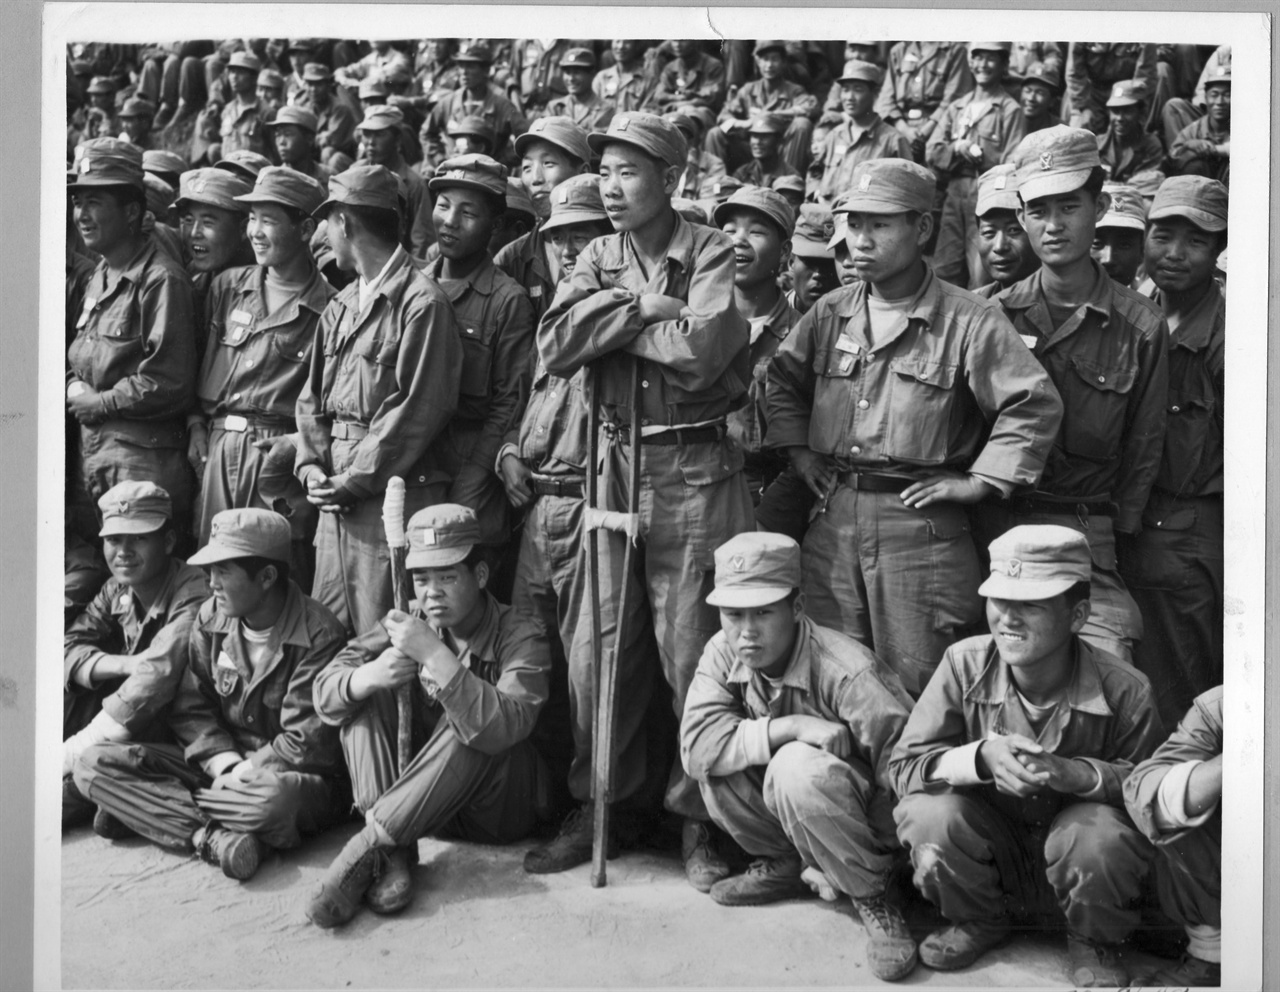 1952. 부산, 국군병원에 입원 중인 부상병들이 경남여중고생들의 위문공연을 관람하고 있다.